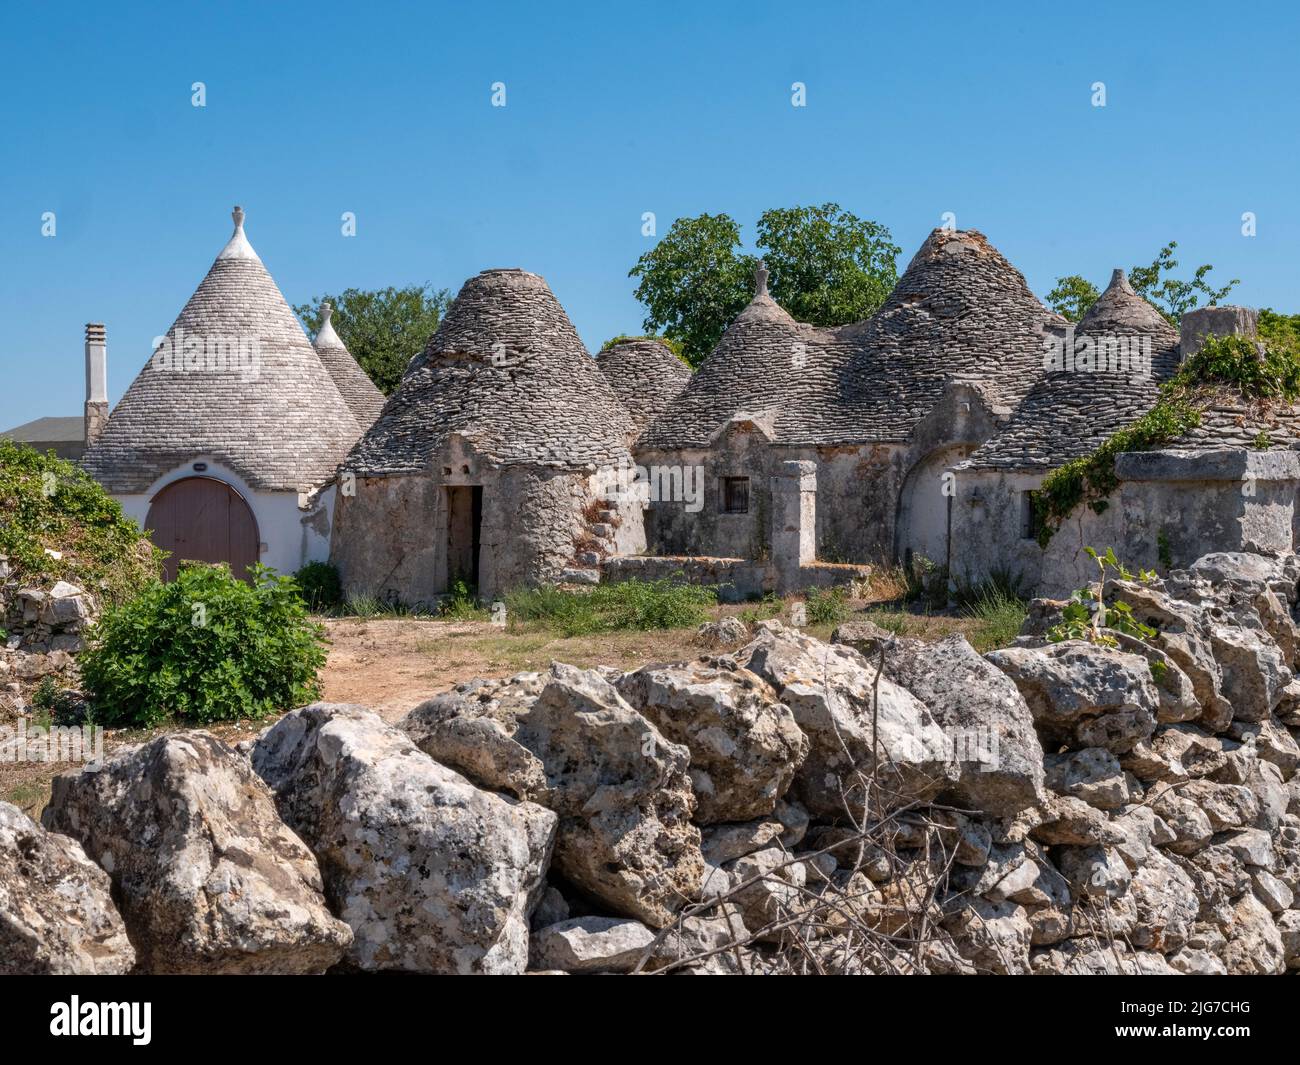 Maisons Trulli de la région Alberobello de Puglia avec des toits coniques originaires des temps préhistoriques faits de blocs de calcaire et sans mortier Banque D'Images